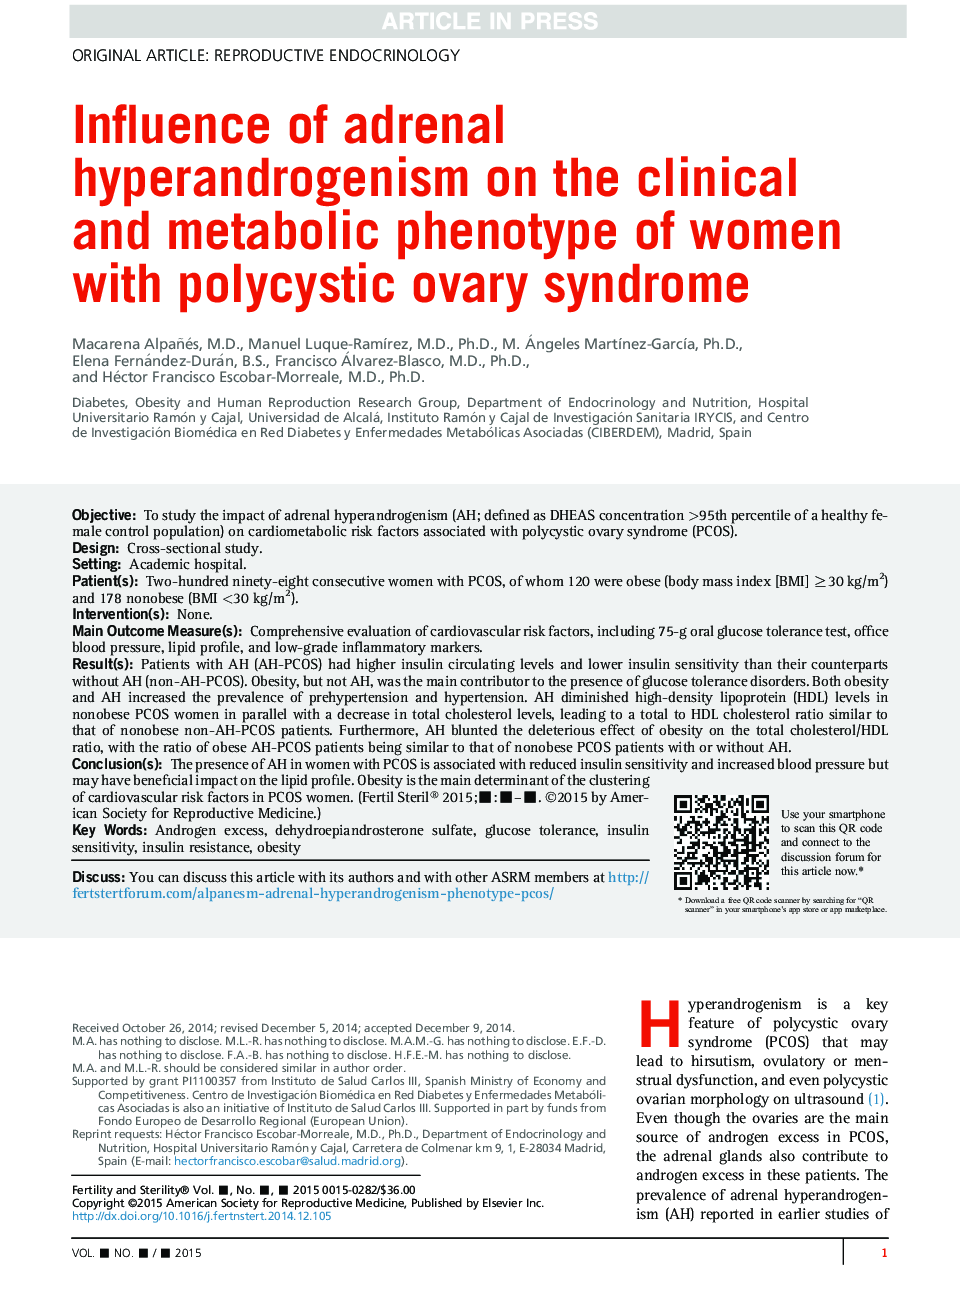 تأثیر هیپرآندروژنیک آدرنال بر فنوتیپ بالینی و متابولیک زنان مبتلا به سندرم تخمدان پلی کیستیک 